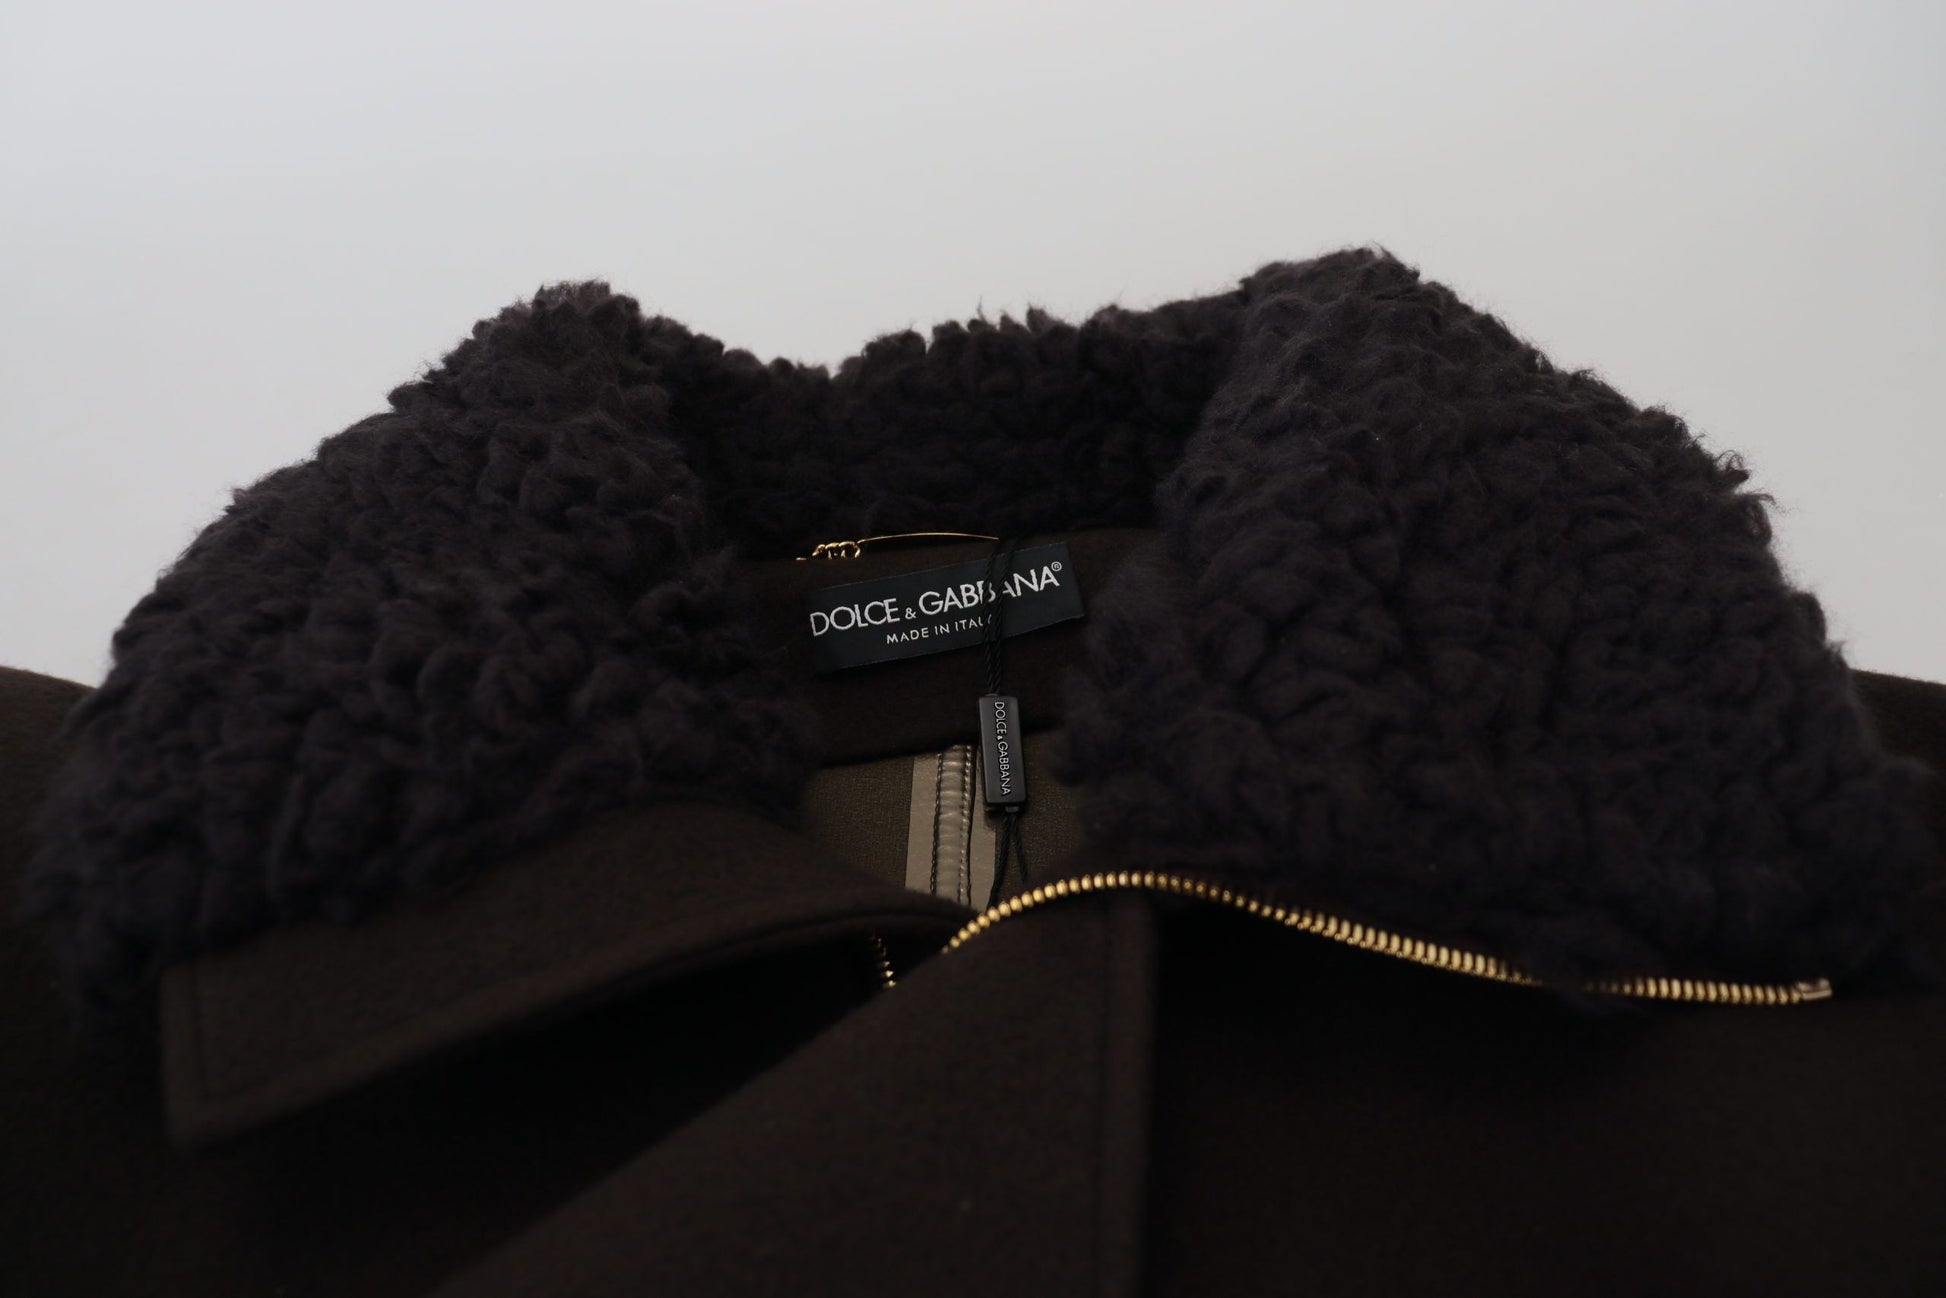 Elegant Dark Brown Shearling Coat Jacket